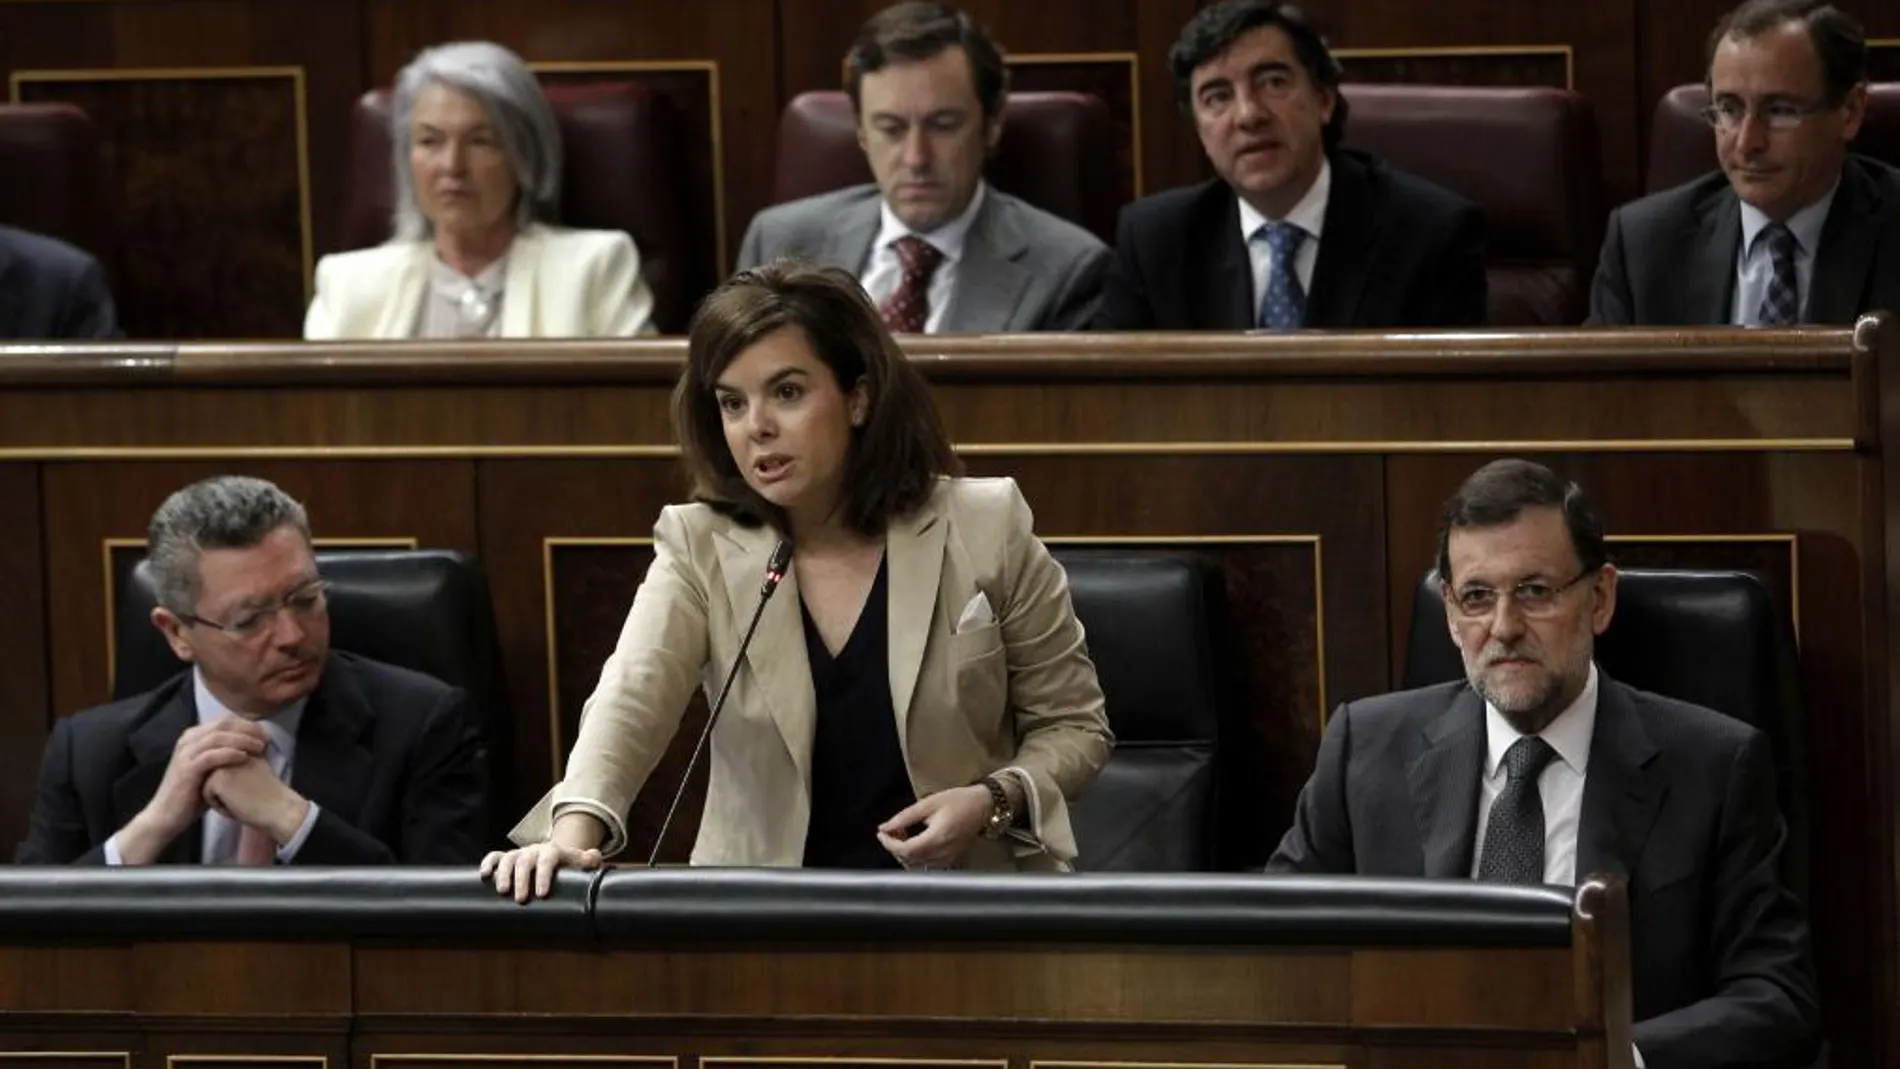 La vicepresidenta del Gobierno, Soraya Sáenz de Santamaría, junto al presidente, Mariano Rajoy y el ministro de Justicia, Alberto Ruiz Gallardón, durante su intervención en la sesión de control al Ejecutivo, esta mañana en el Congreso de los Diputados.